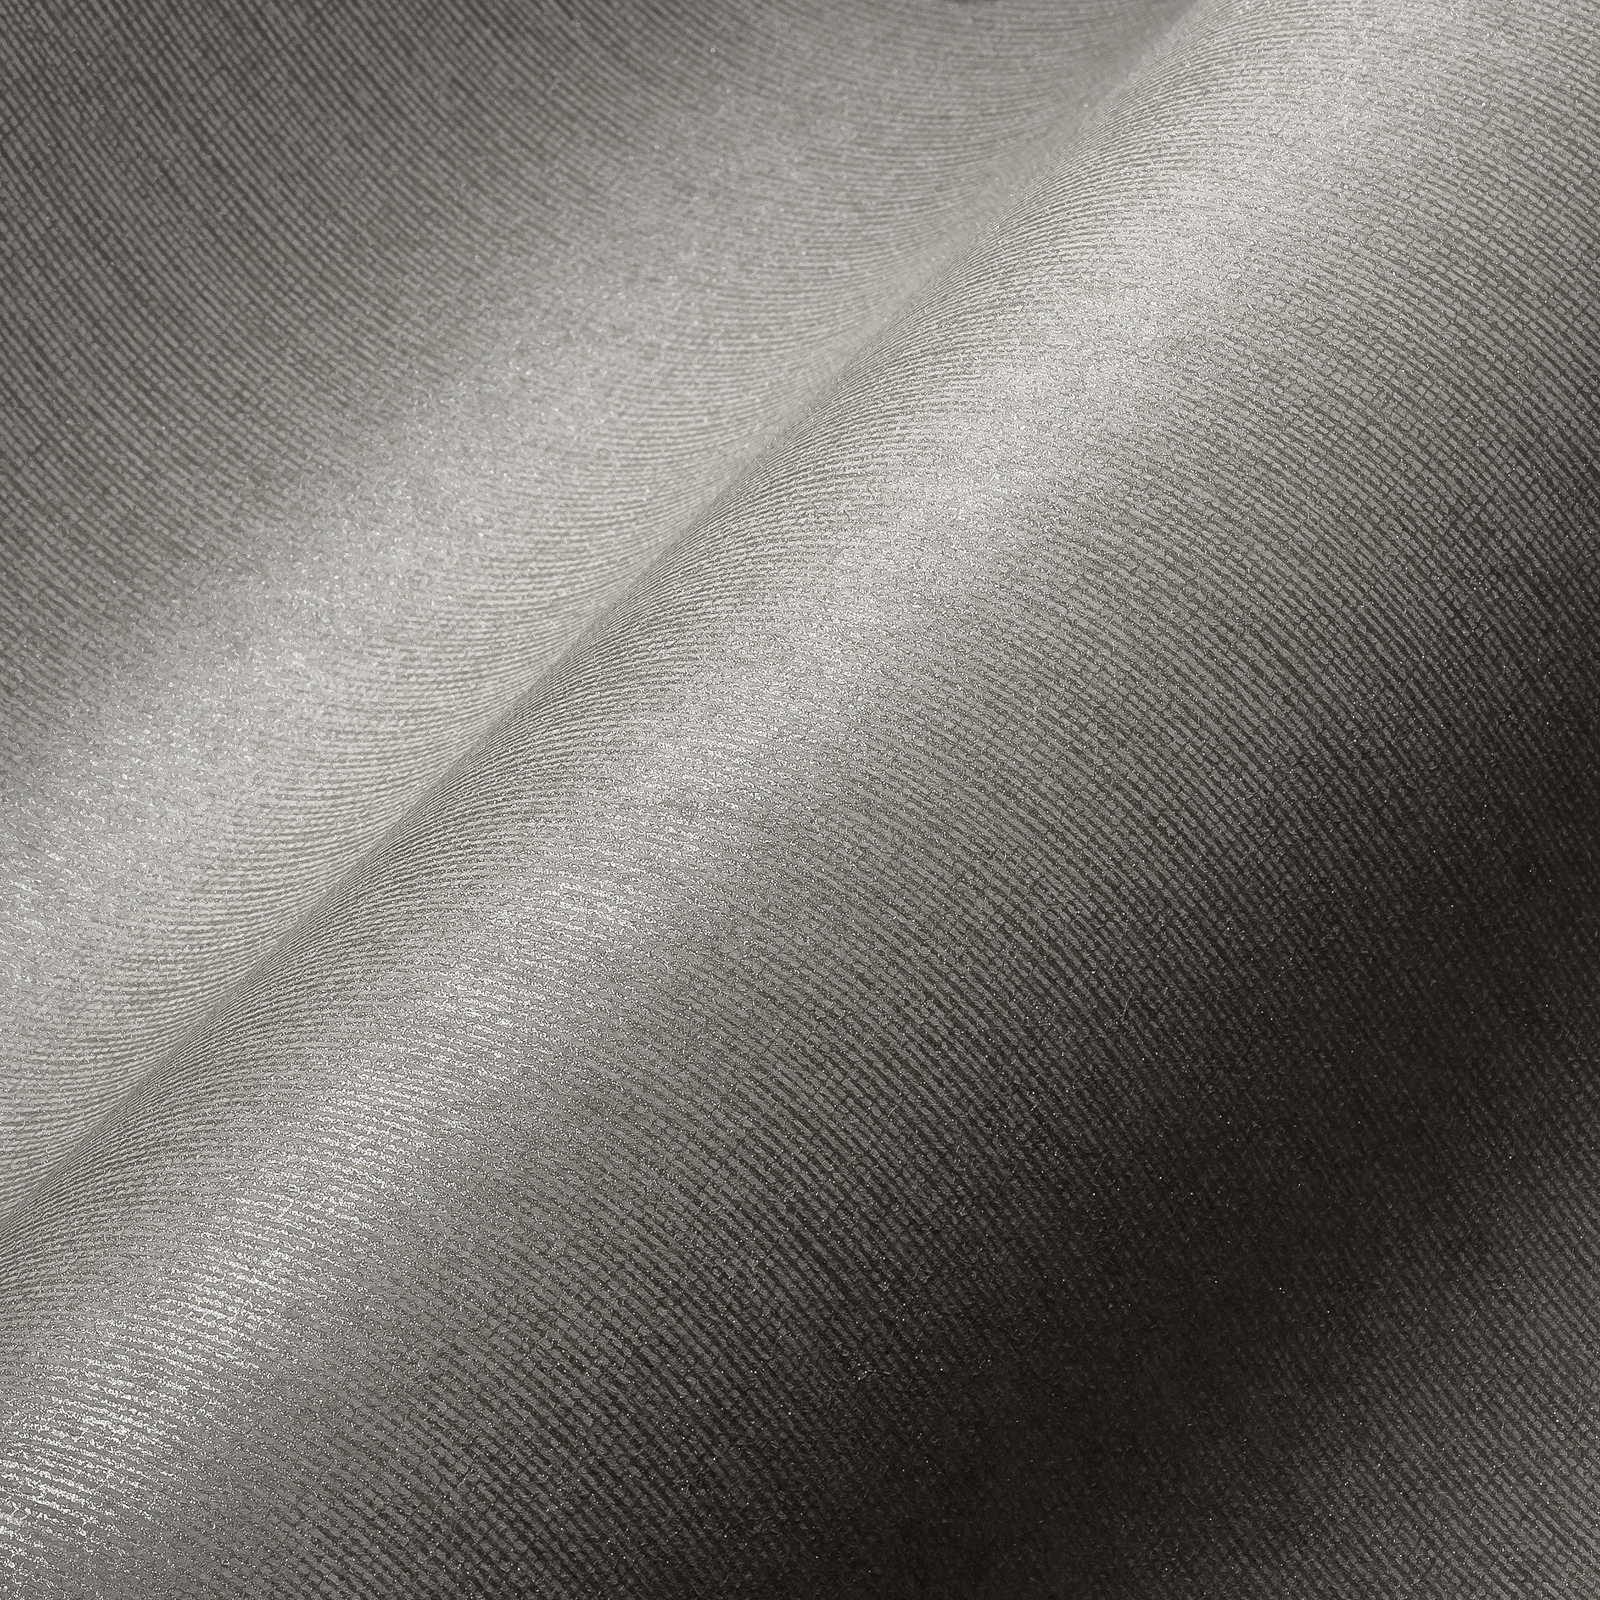             Glansbehang met textielstructuur & glanseffect - grijs, bruin
        